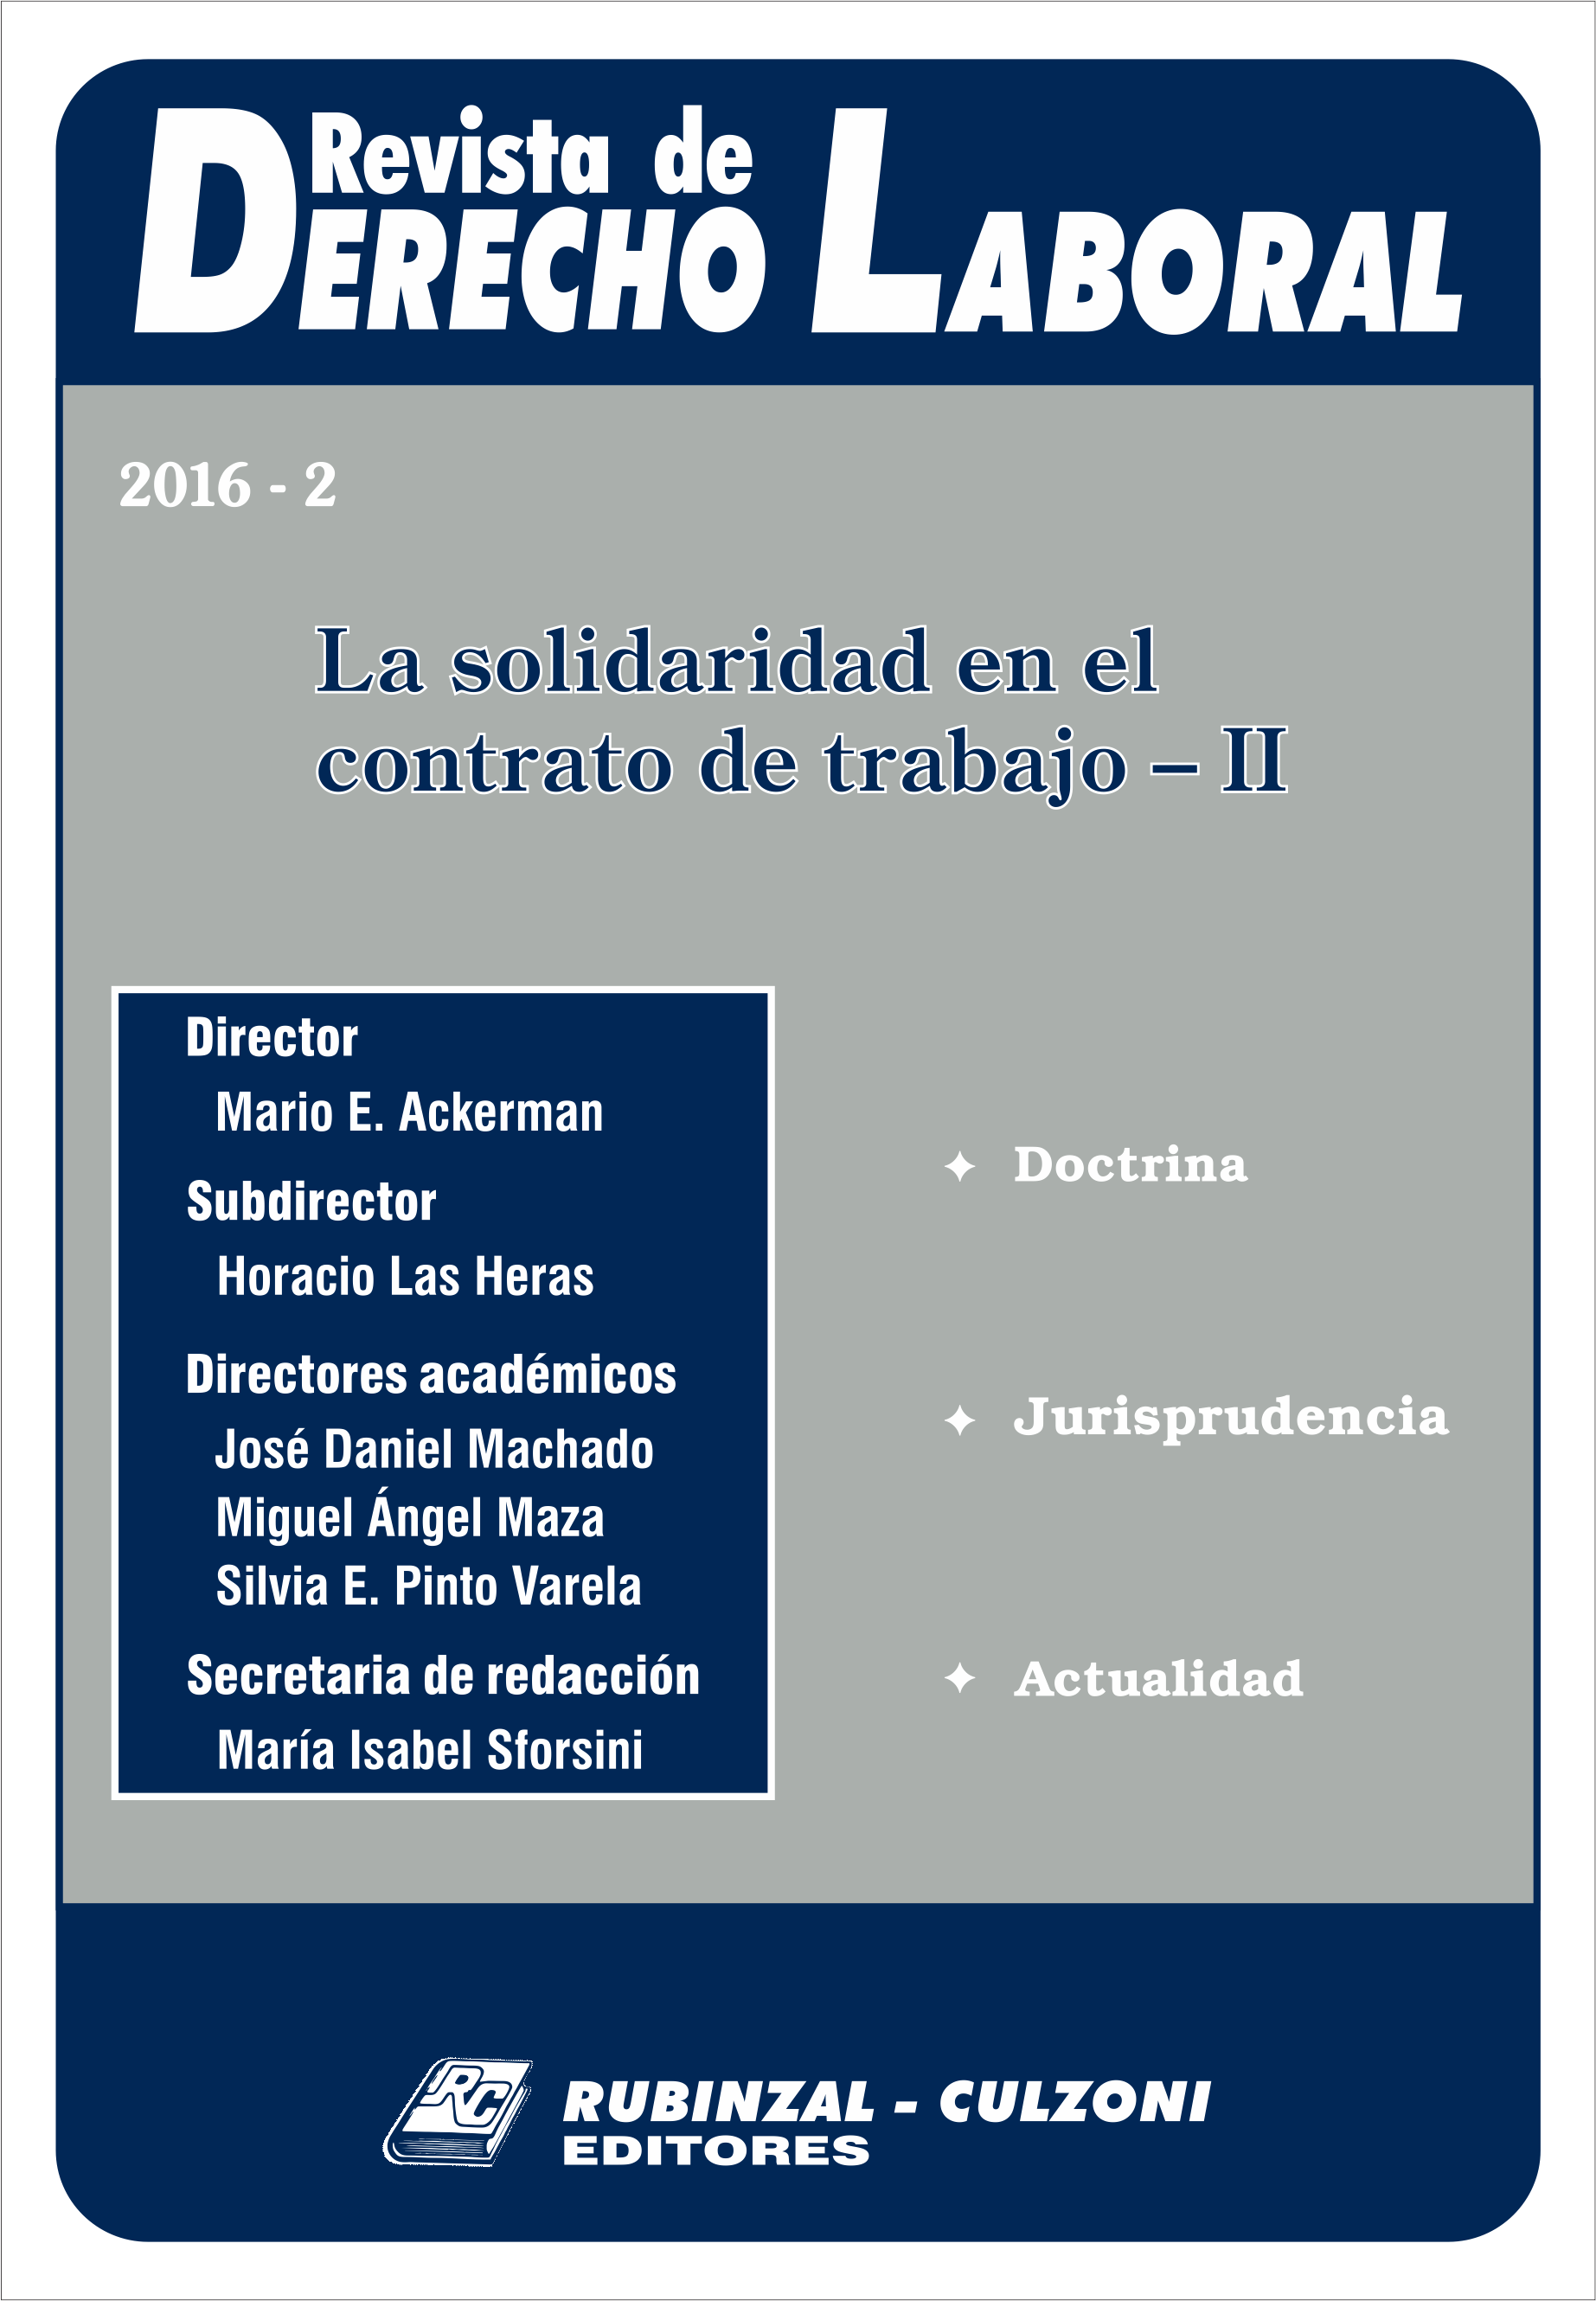 Revista de Derecho Laboral - La solidaridad en el contrato de trabajo -II